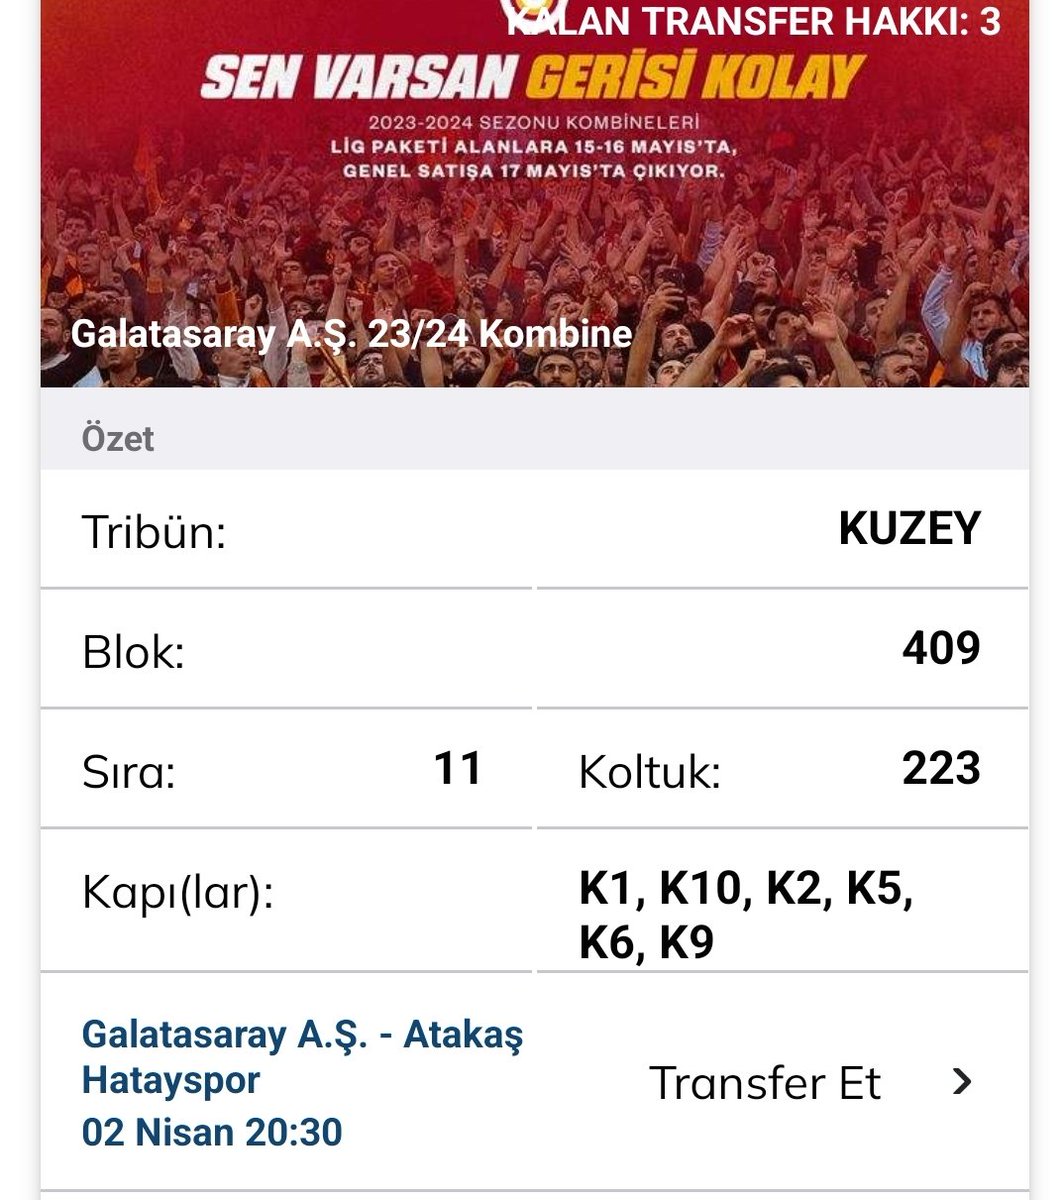 Galatasaray hatayspor maçına 2 adet yan yana bilet mevcuttur.💛❤️🦁 #biletarıyorum #biletdevret #biletdevir #biletvar #galatasaraybilet #galatasaraybiletdevir #galatasaraykombine #Galatasaray #GalatasaraylılarTakipleşiyor #galatasaraymaçı #biletarıyorum